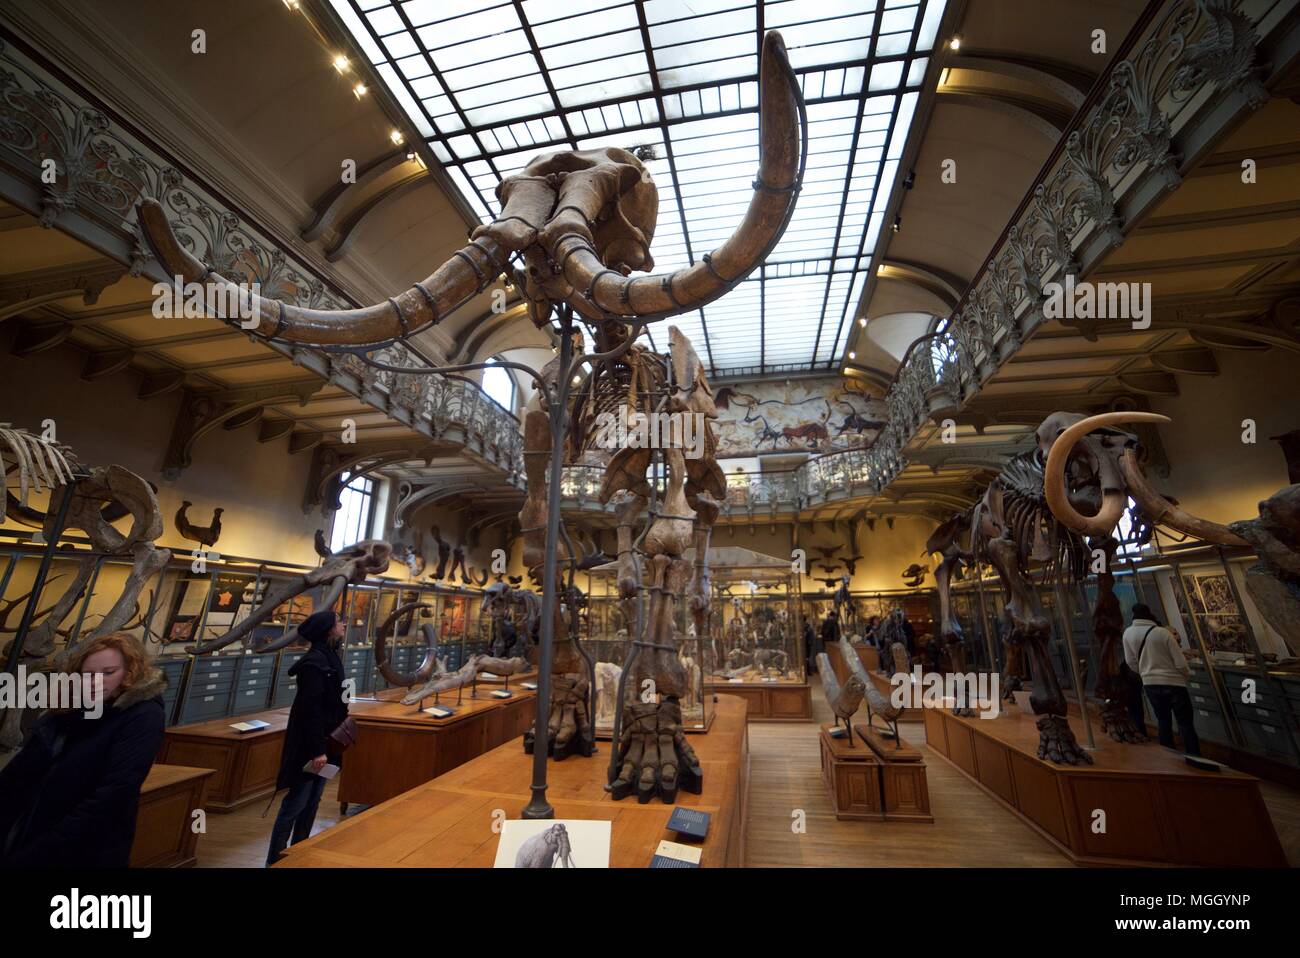 Ein Mammut/Elephant skeleton auf Erscheinen im National Museum of Natural History in Paris, mit anderen Skelette der Tiere im Inneren. Stockfoto